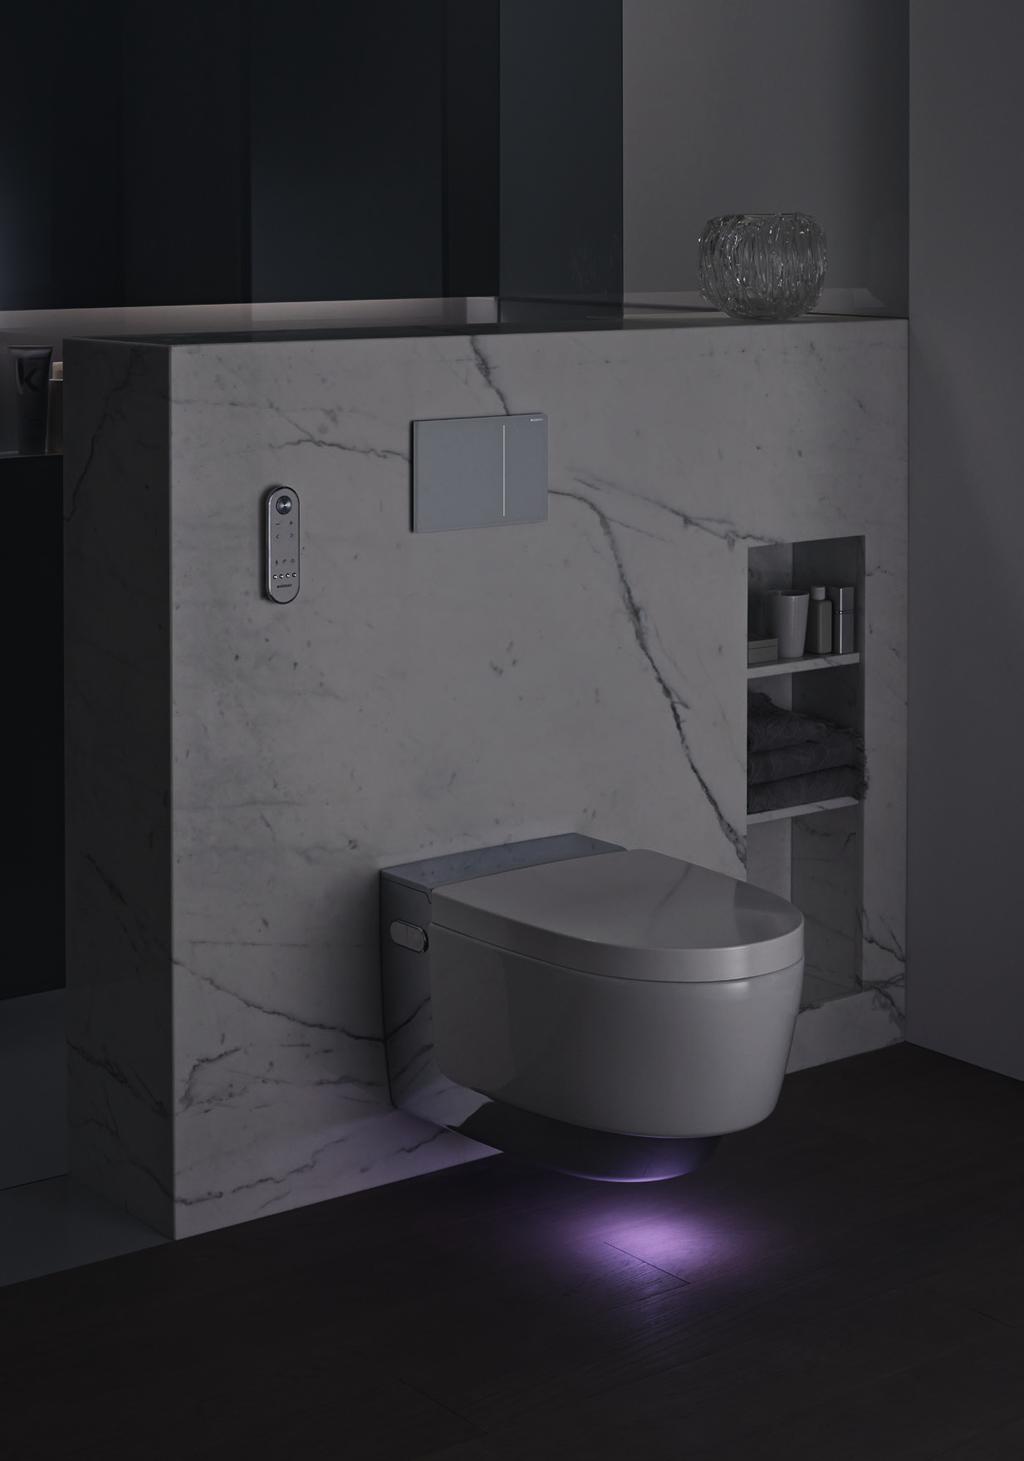 Prvotriedne kompletné riešenie toalety s integrovanou sprchou Patentovaná technológia sprchovania WhirlSpray pre jemný a osviežujúci sprchovací prúd vody Keramická misa bez okrajov s technológiou